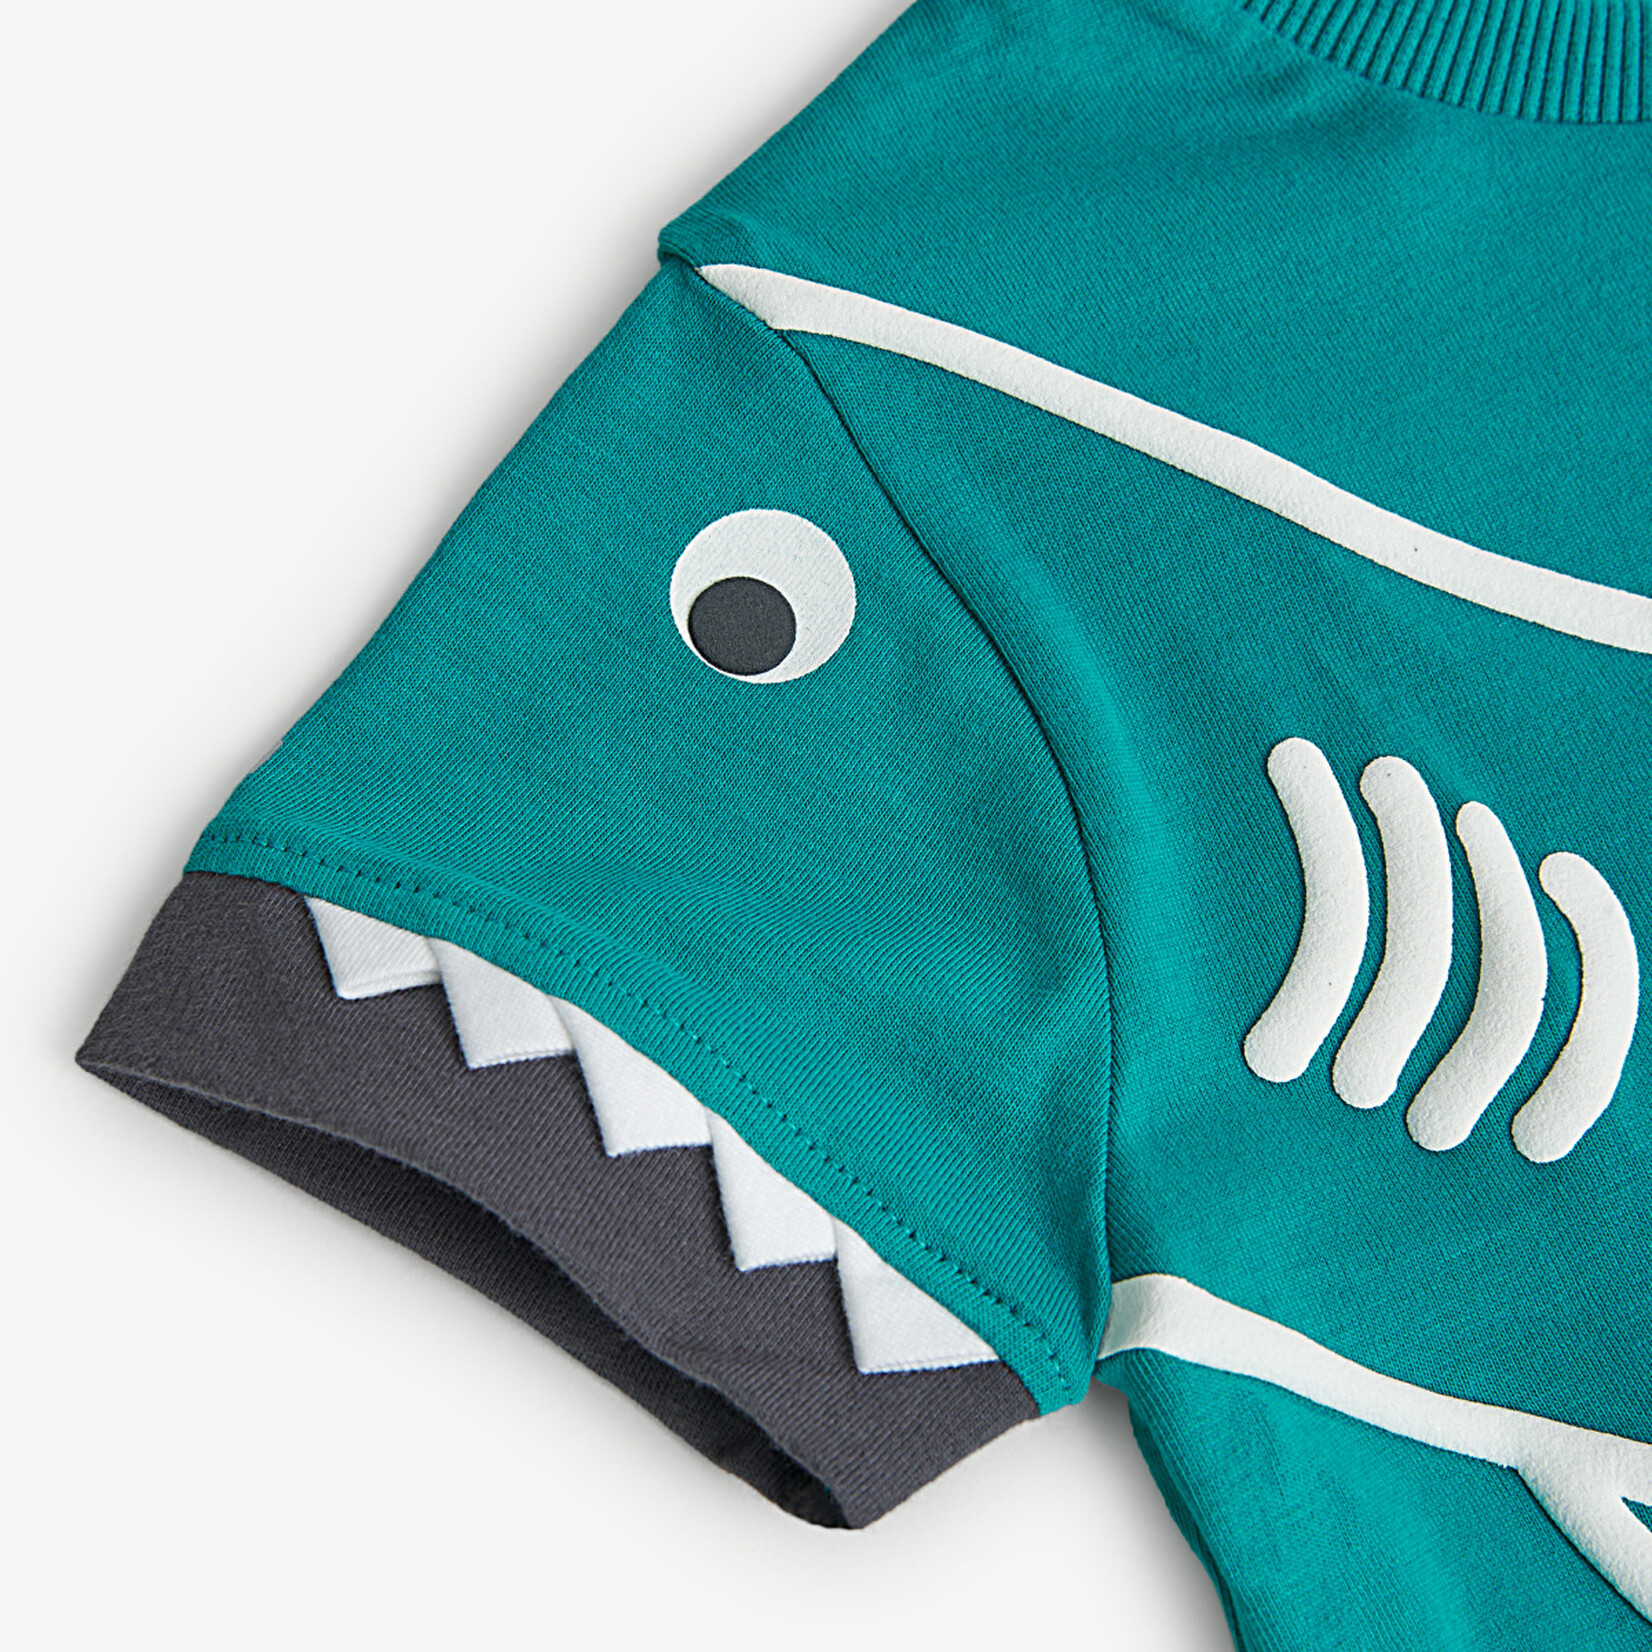 Boboli BOBOLI - T-shirt à manches courtes turquoise avec appliqué blanc de requin